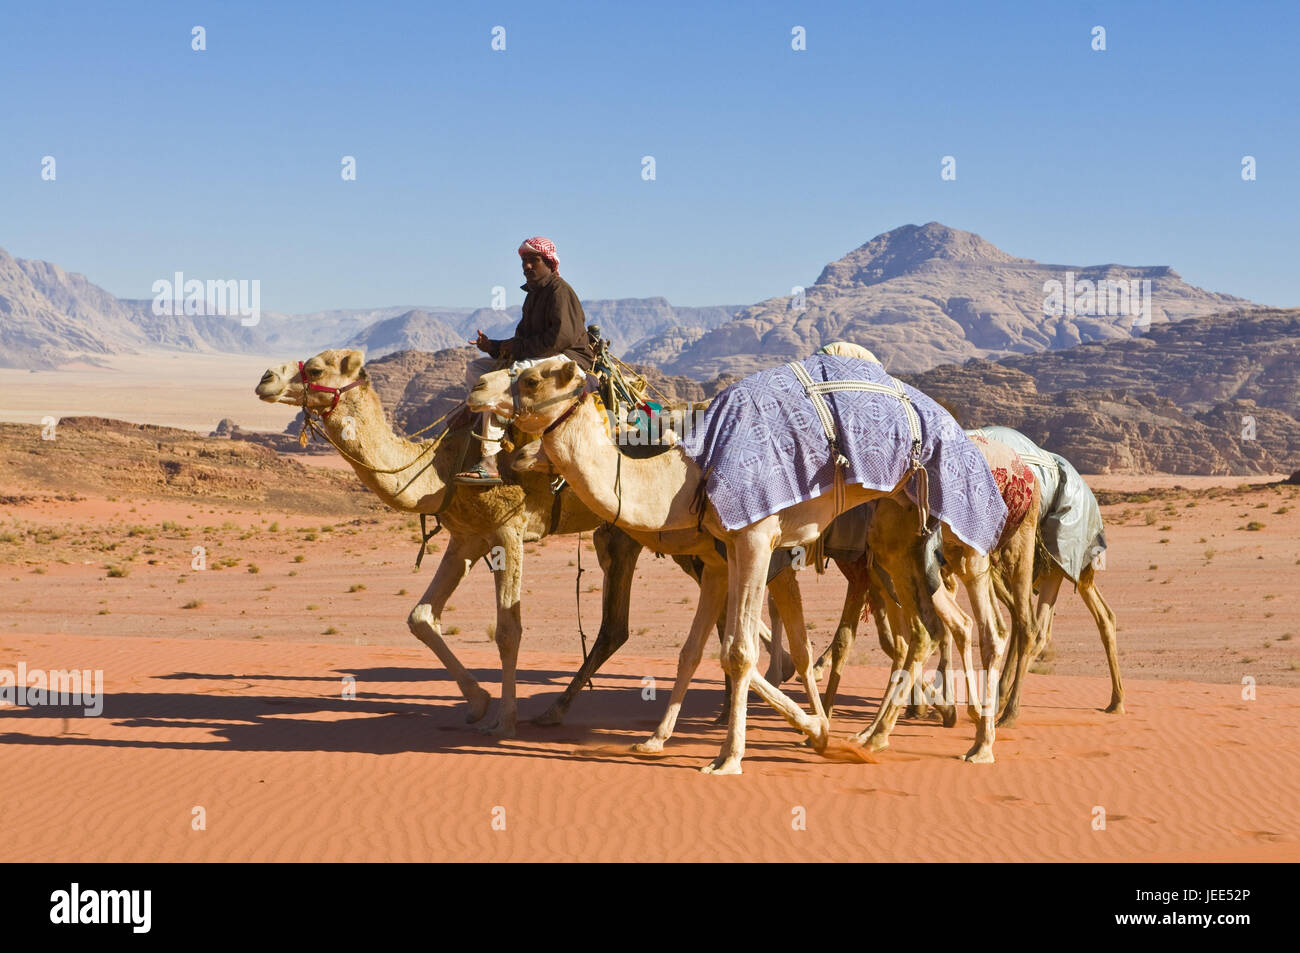 Bedouin with camels in the desert, wadi rum, Jordan, Stock Photo